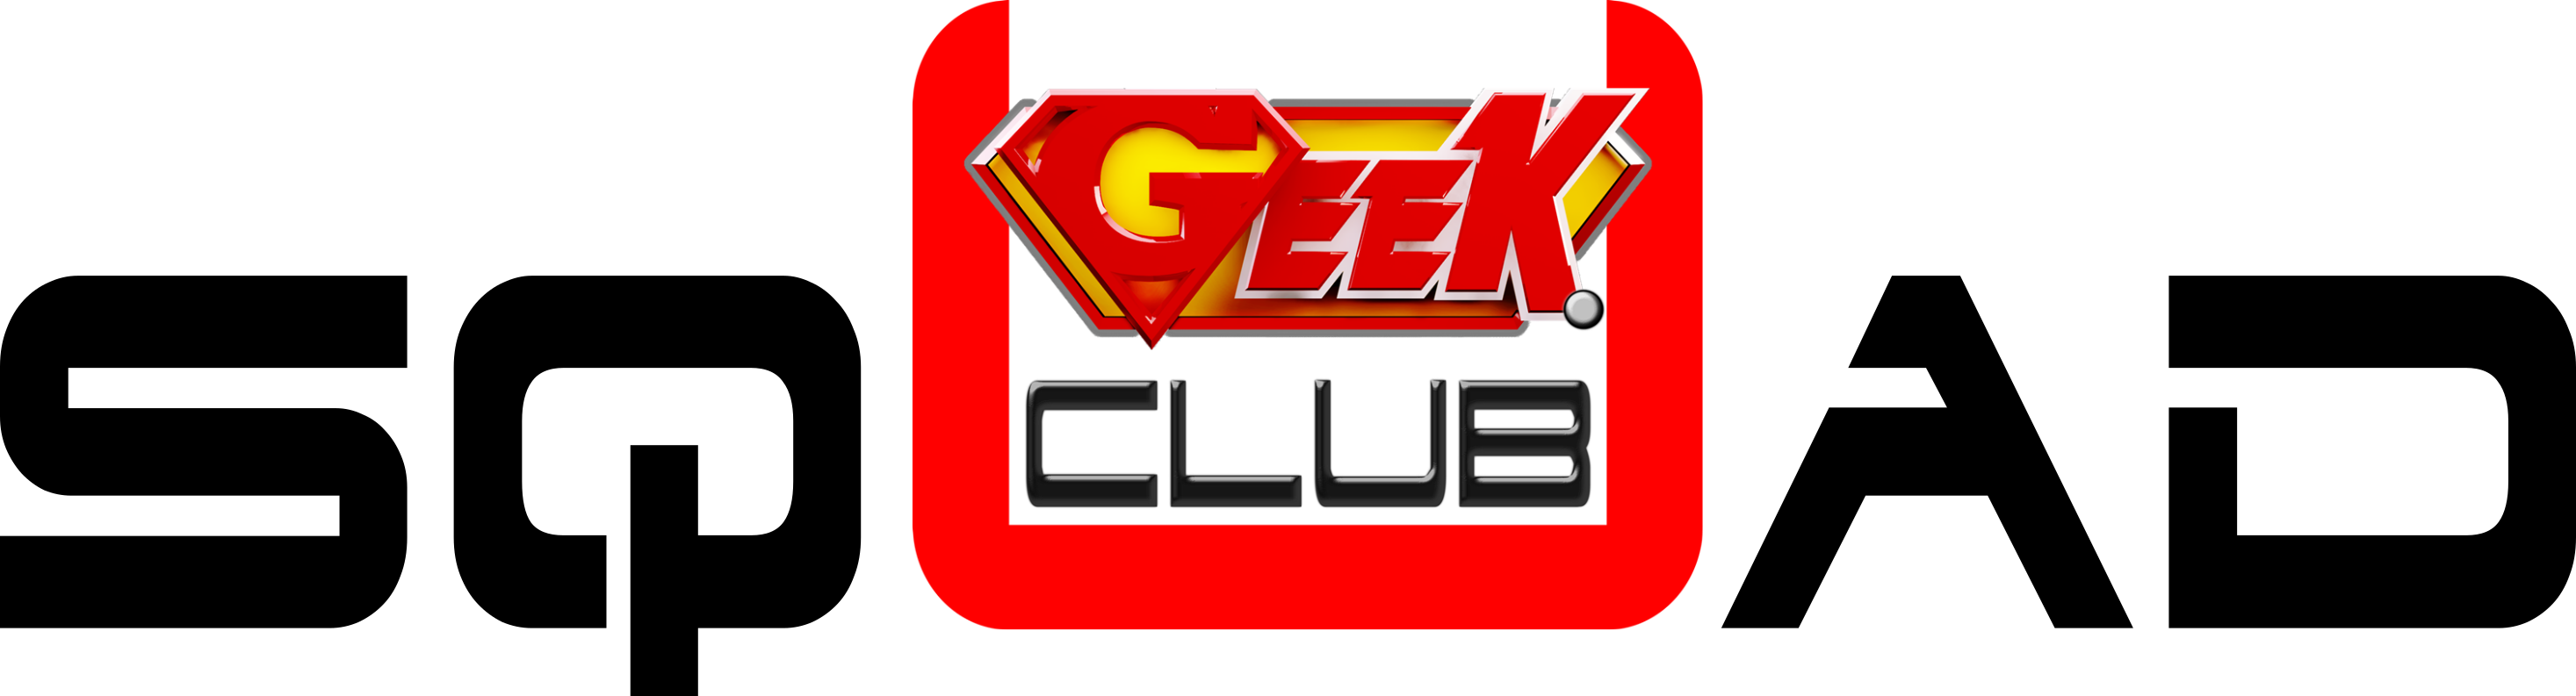 Ugeek Club - The Lego Batman Movie (2933x793)